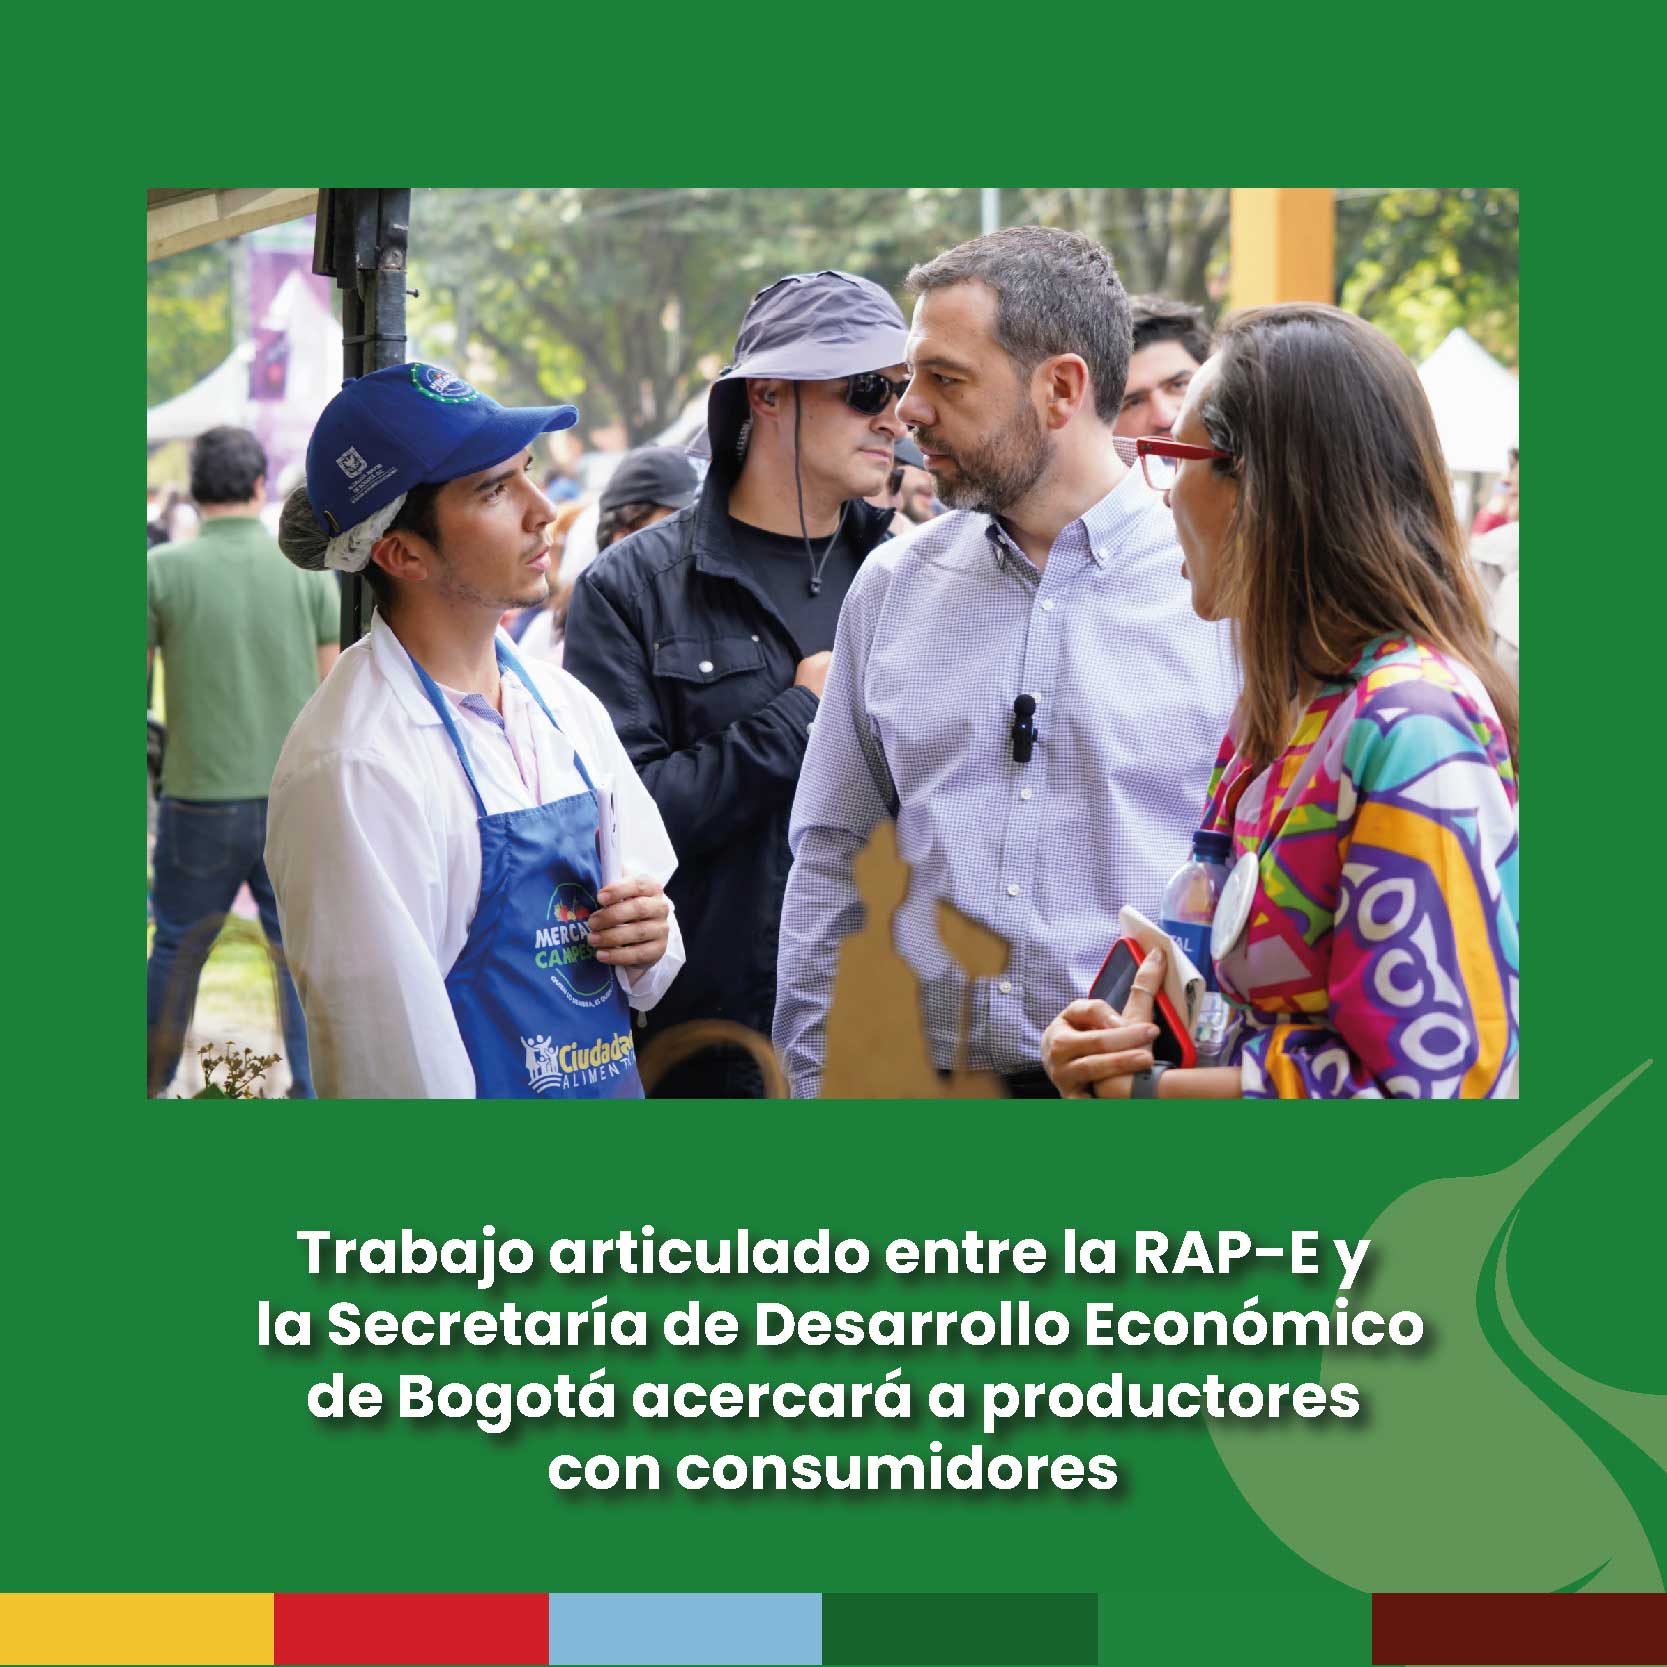 Trabajo articulado entre la RAP-E y la Secretaría de Desarrollo Económico de Bogotá acercará a productores con consumidores